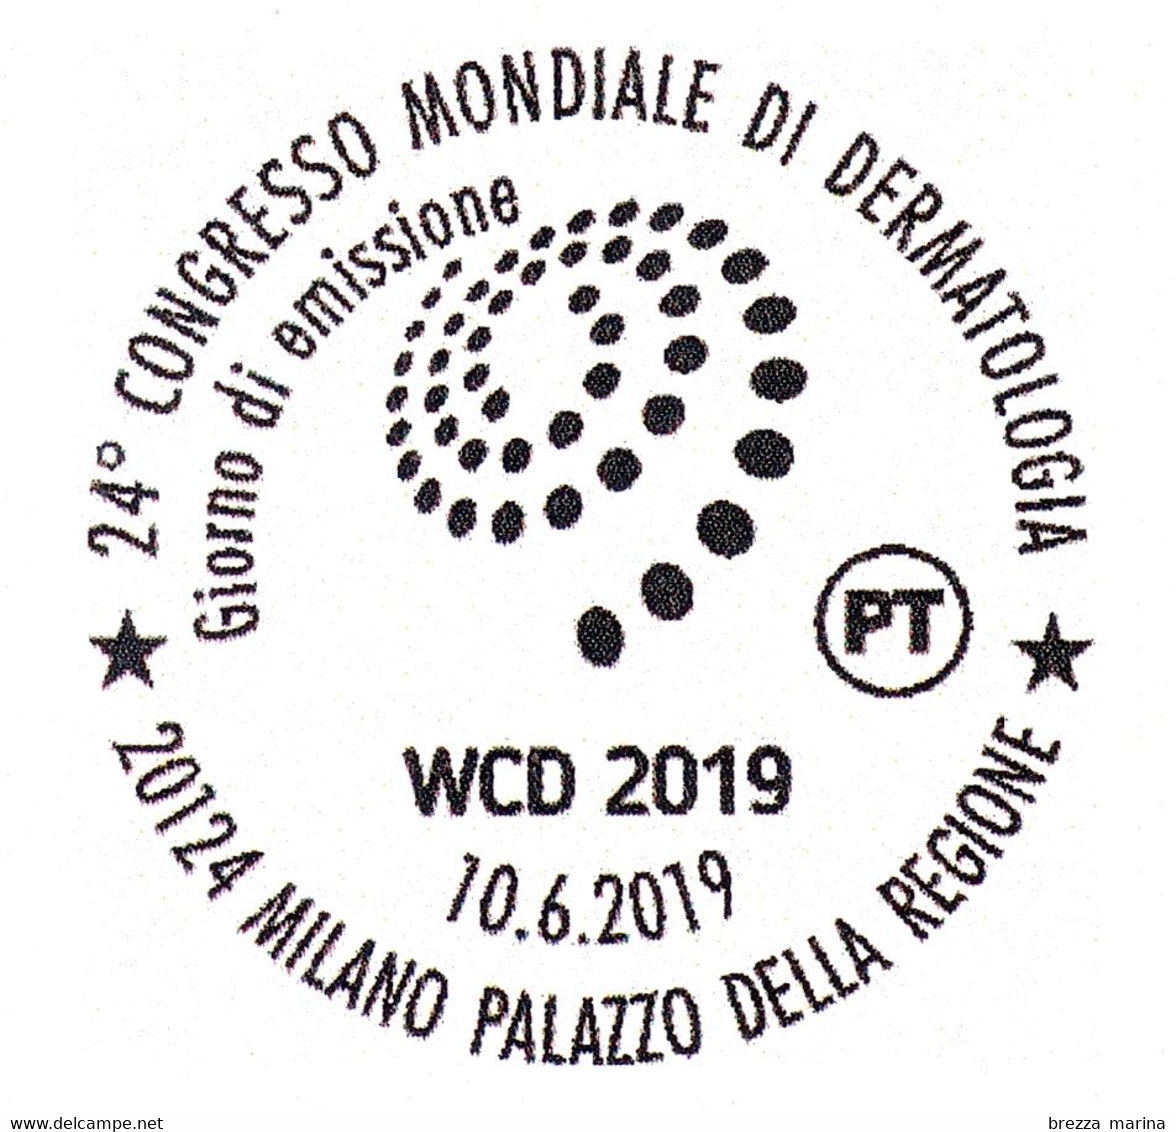 ITALIA - Usato - 2019 - 24° Congresso Mondiale Di Dermatologia - Logo - B - 2011-20: Usados